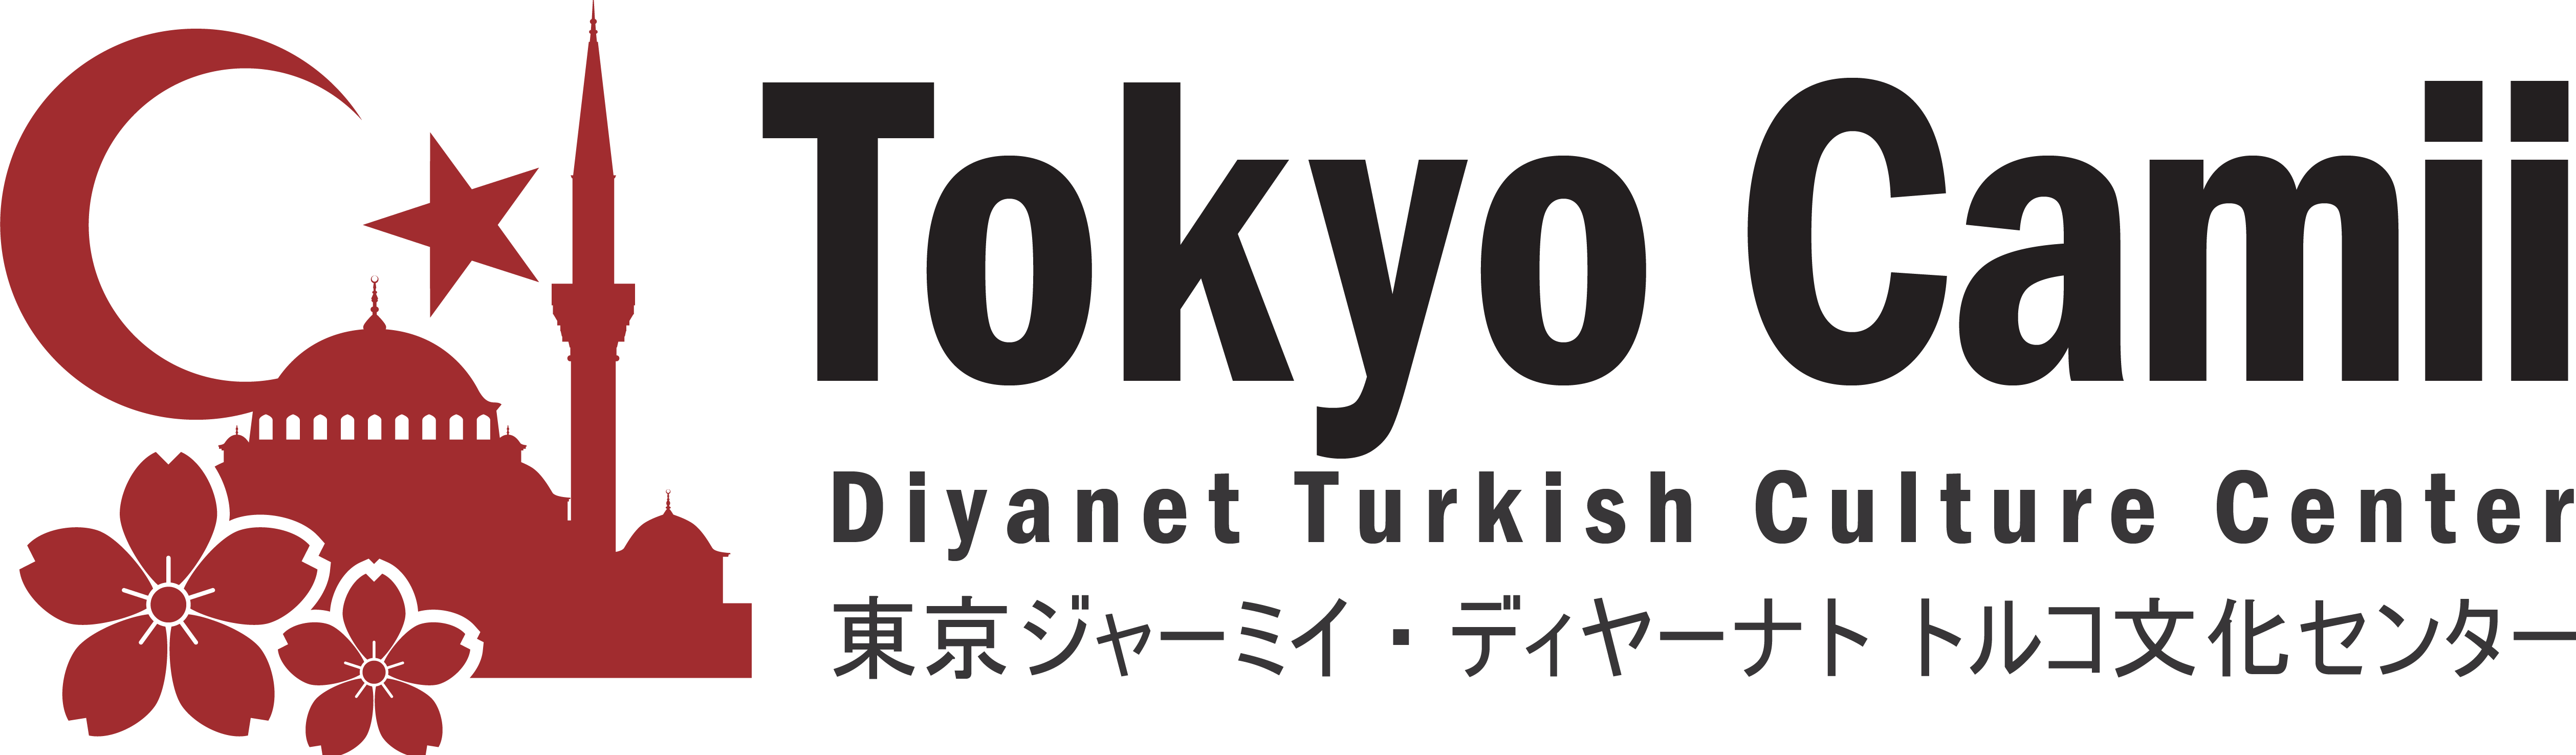 東京ジャーミイ・ディヤーナト トルコ文化センター | Tokyo Camii and Diyanet Turkish Culture Center